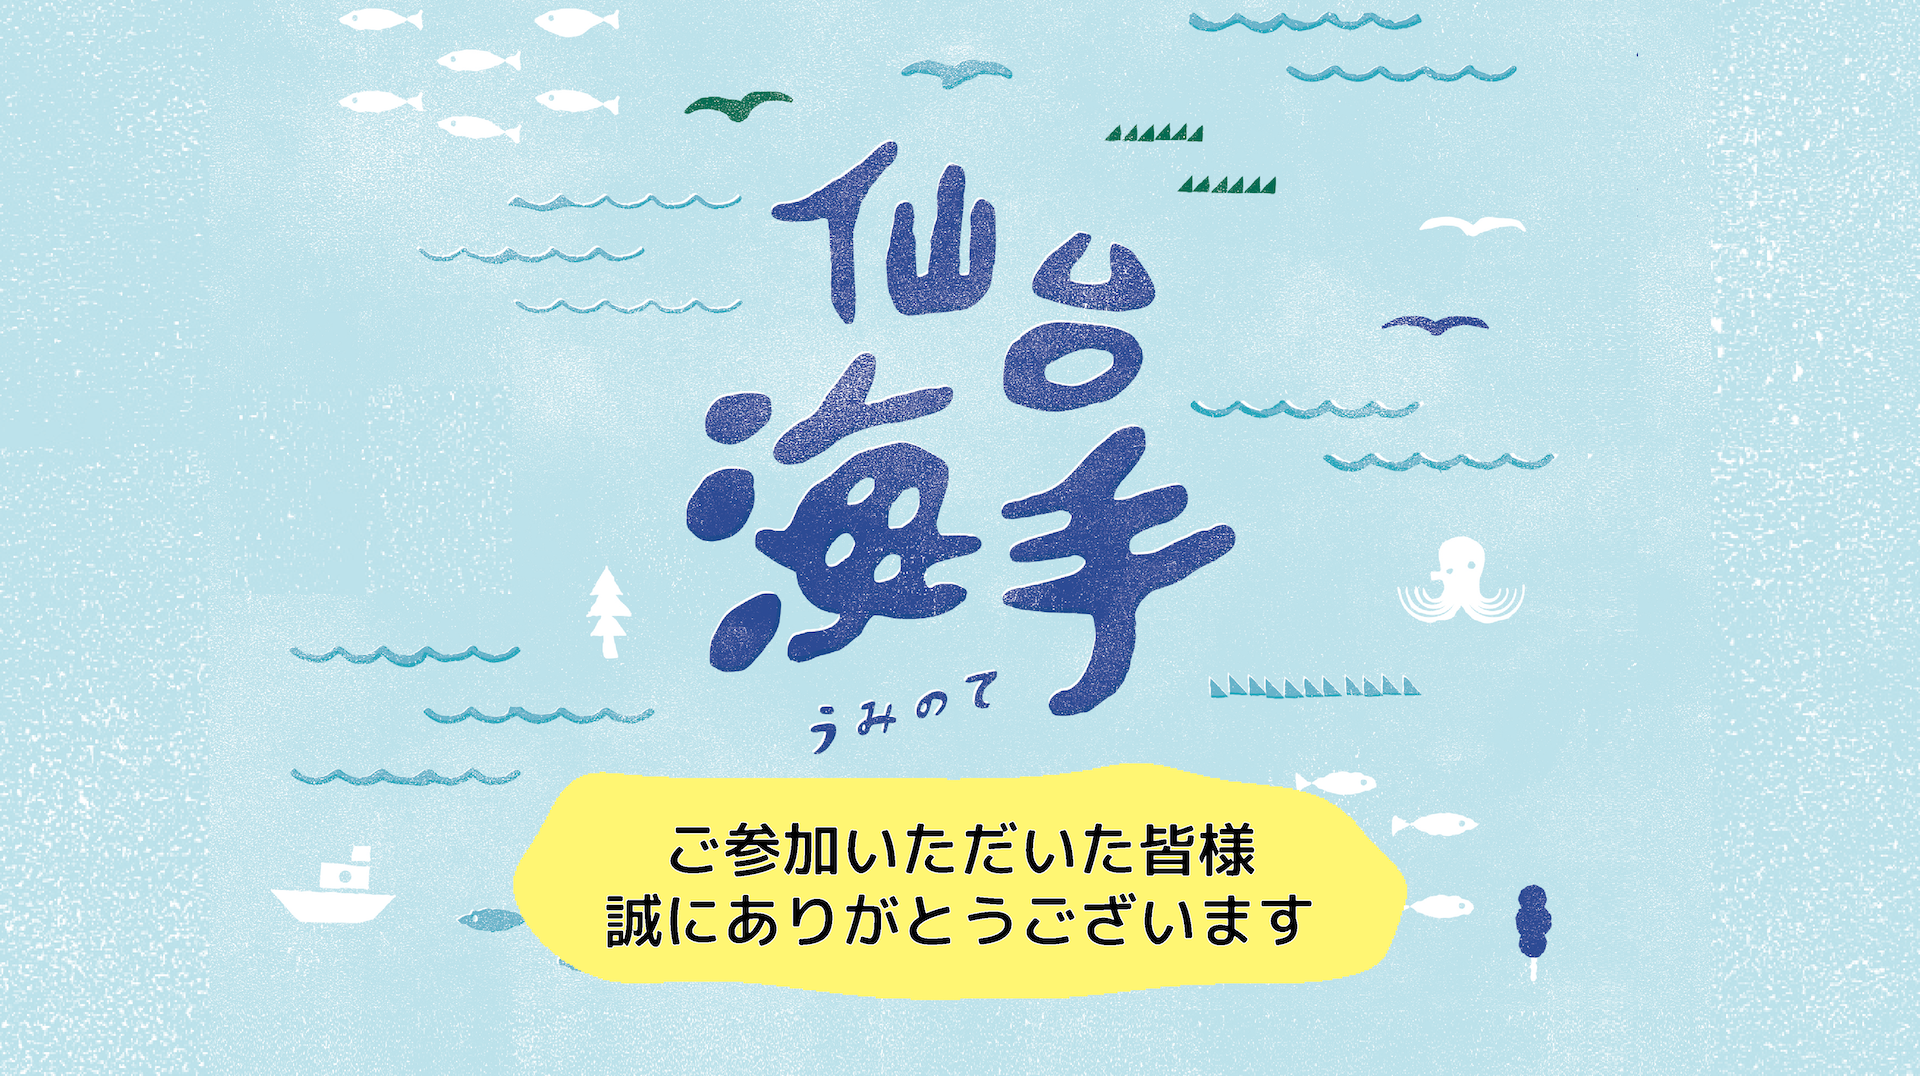 仙台海手キャンペーン2021